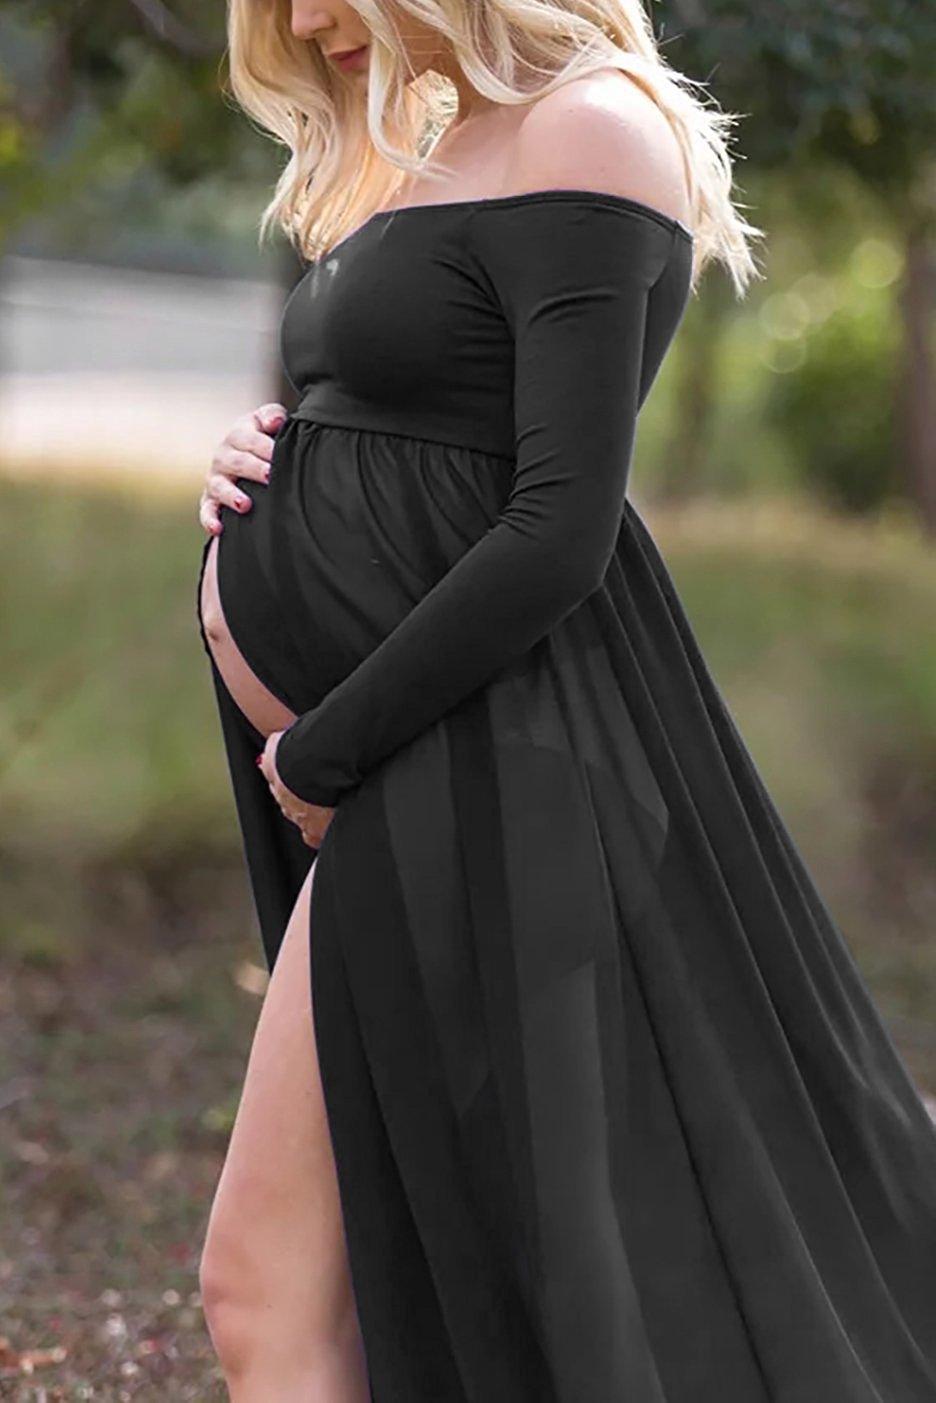 Pregnancy Dress Photo Shoot Maternity Gown - Photography Baby Shower Dress - Tulle Maternity Dress (1U5)(Z6)(Z8)(1Z1)(2Z1)(3Z1)(4Z1)(7Z1)